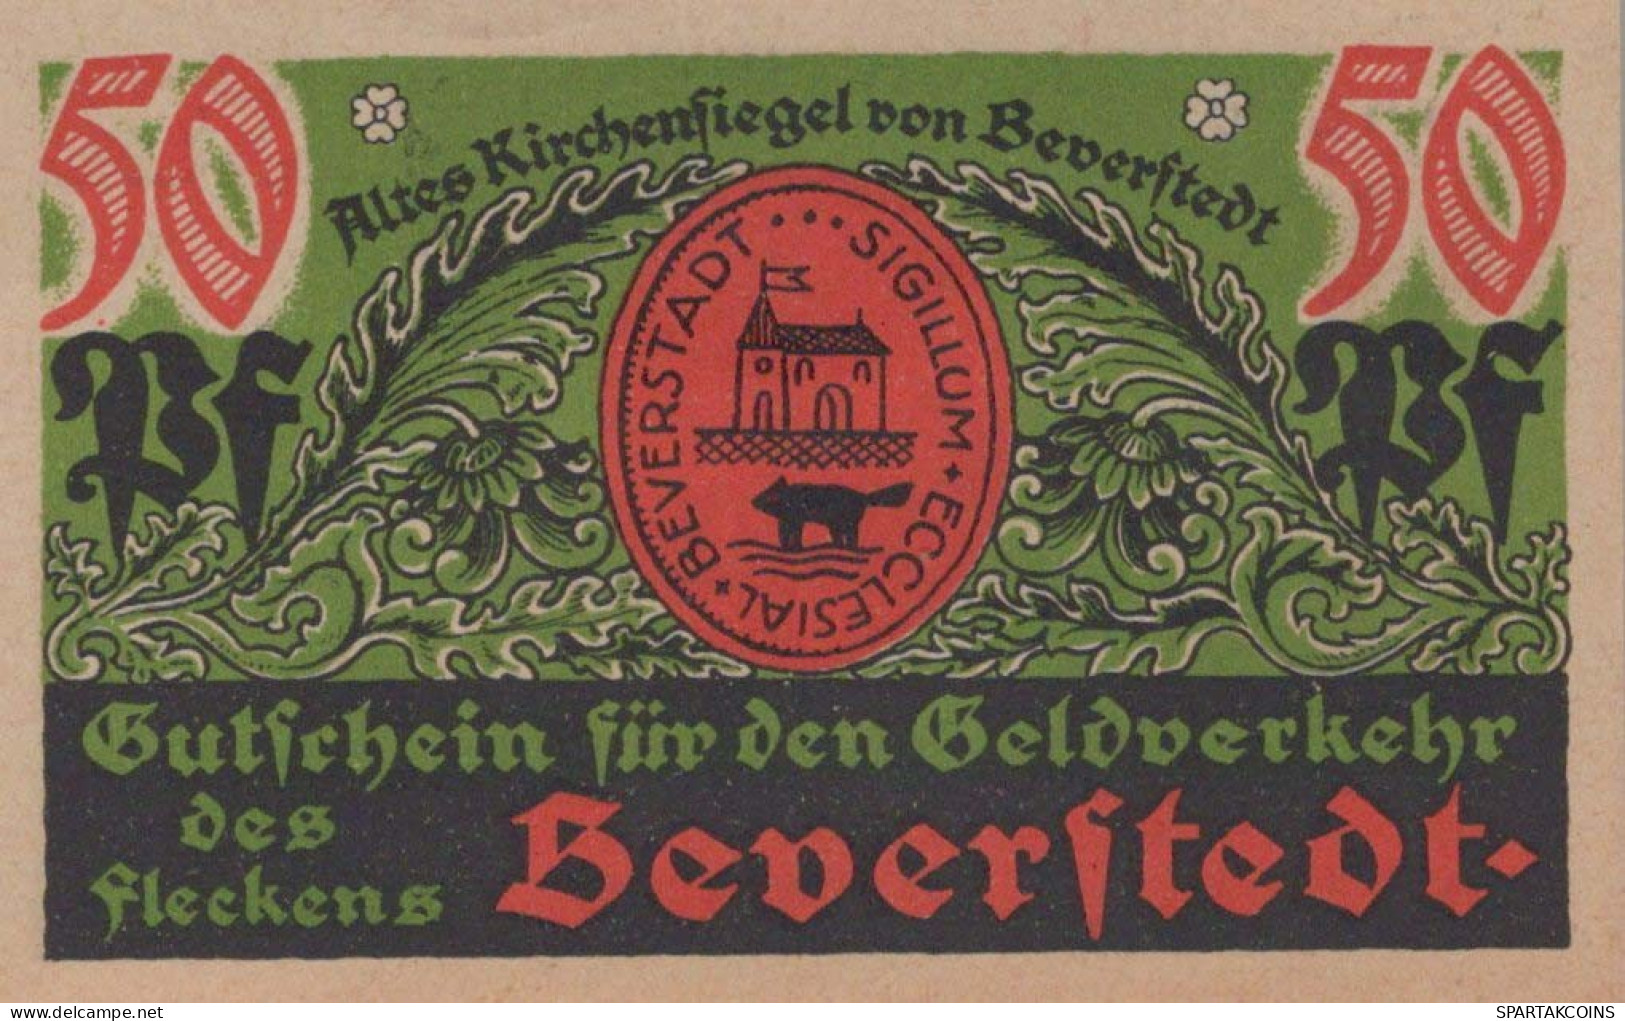 50 PFENNIG 1922 Stadt BEVERSTEDT Hanover DEUTSCHLAND Notgeld Banknote #PF811 - [11] Lokale Uitgaven